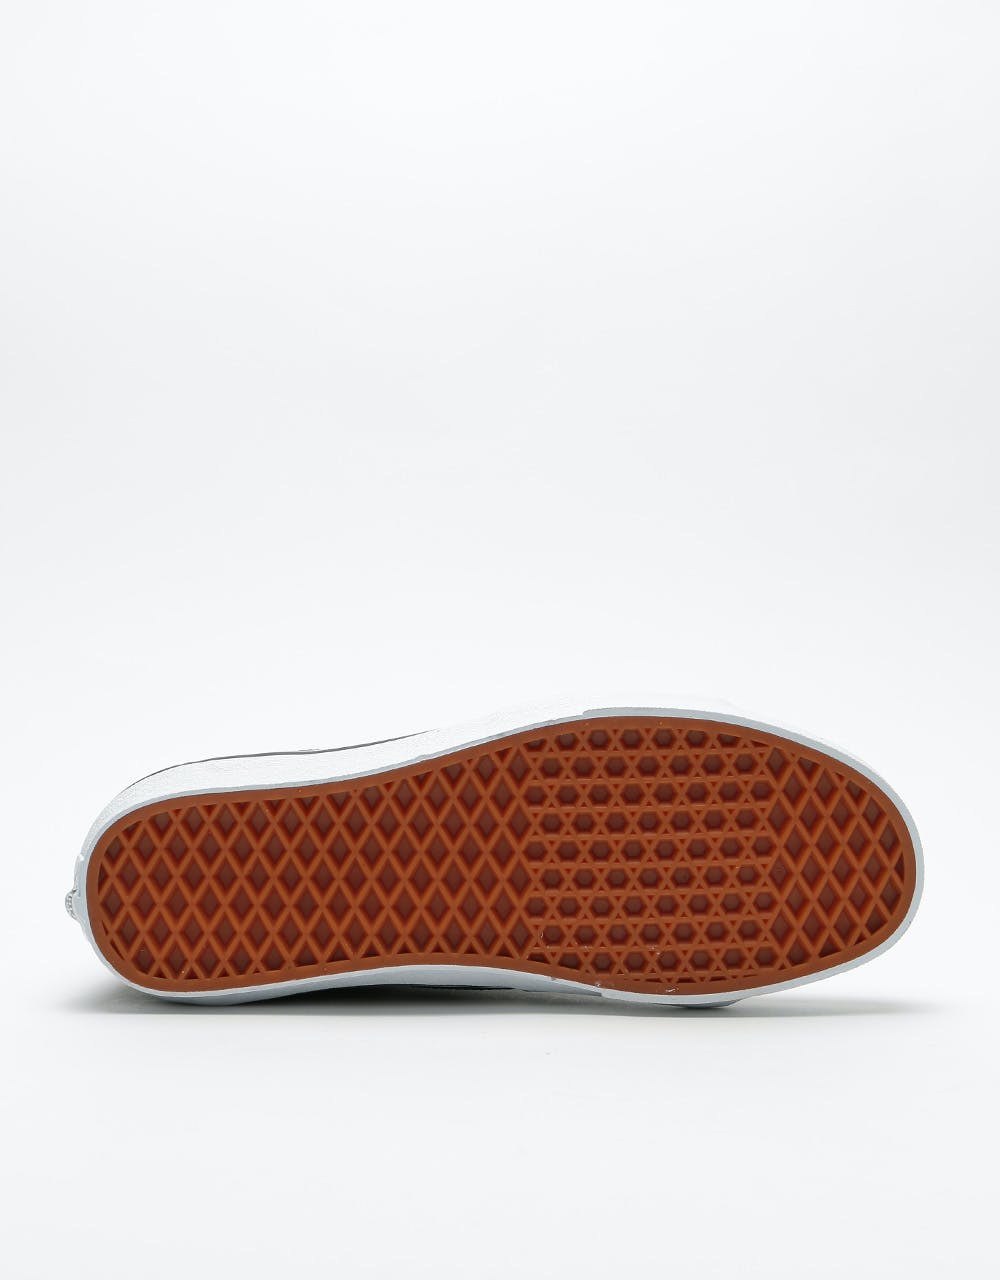 Vans Sk8-Hi Skate Shoes - (Realtree® Xtra) Meteorite